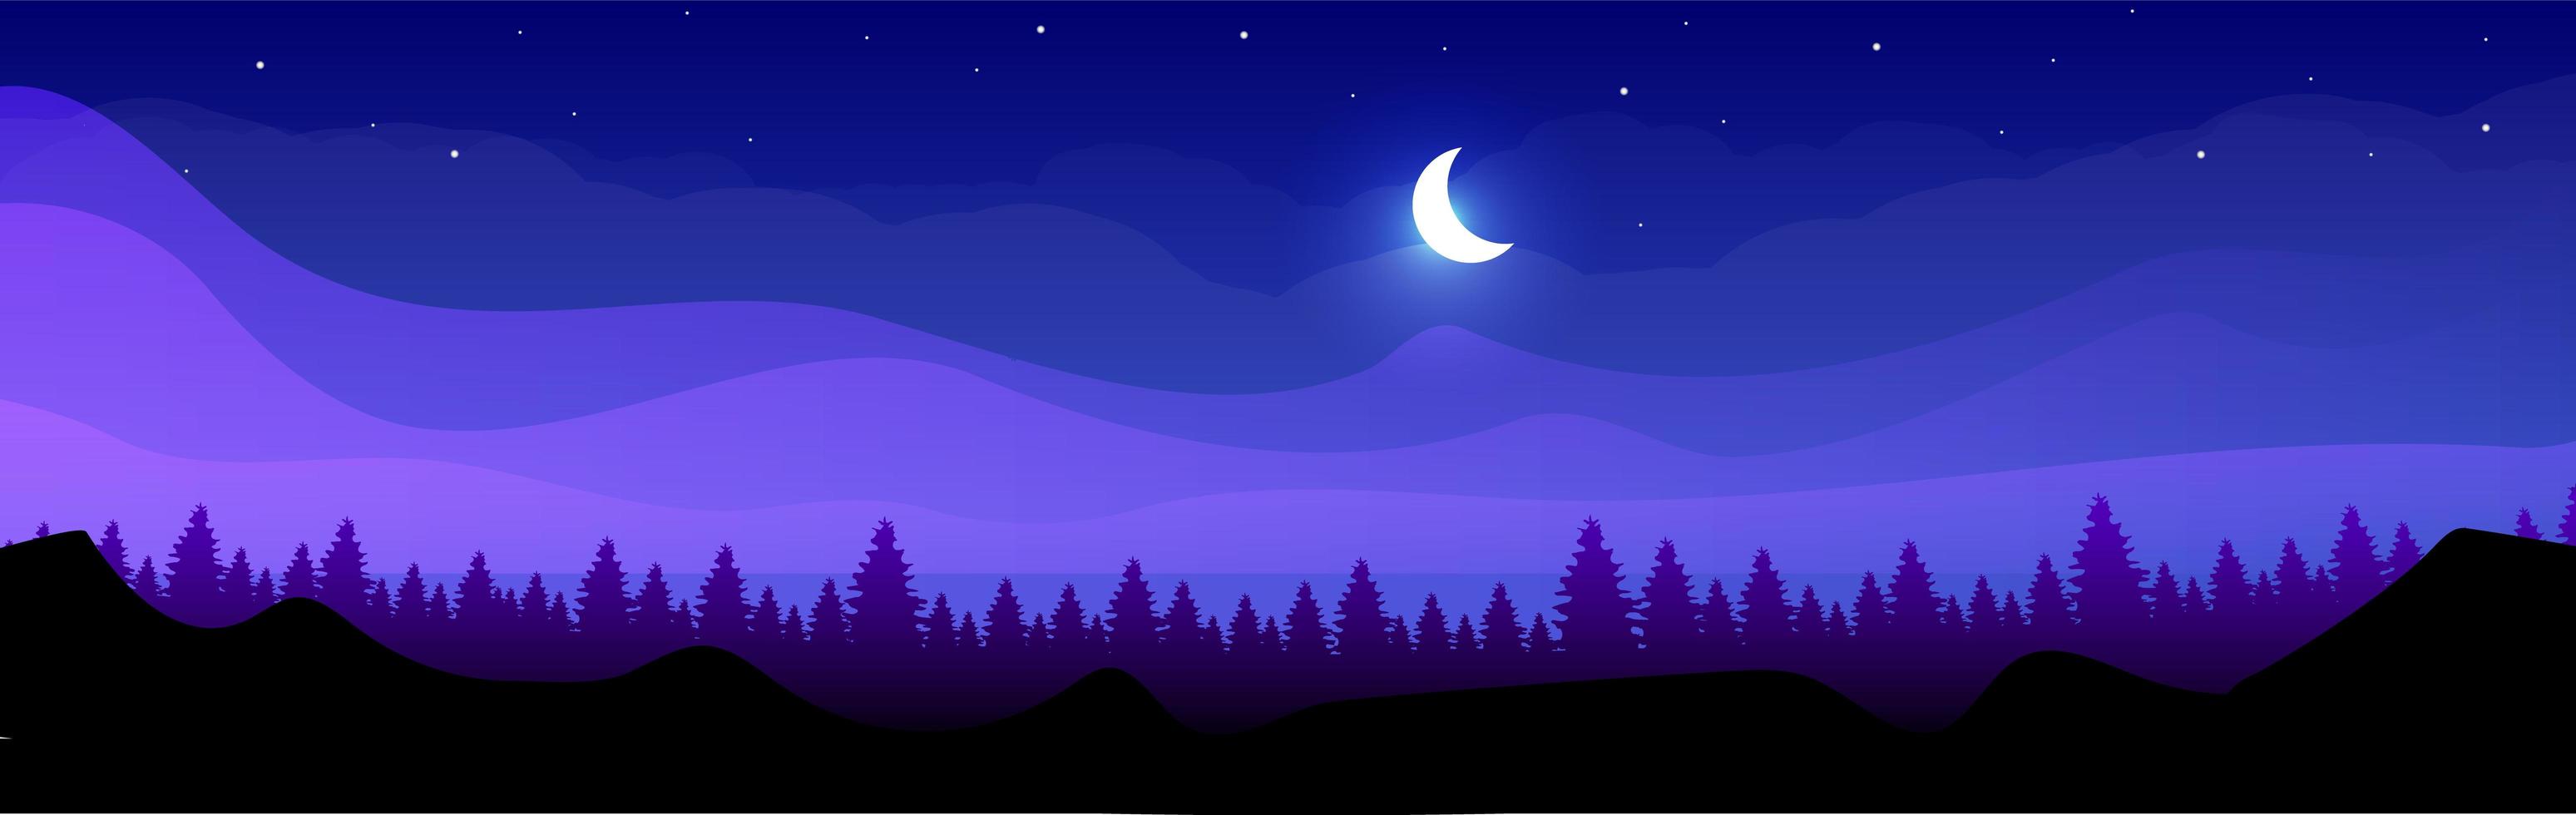 Berge in der Nacht vektor